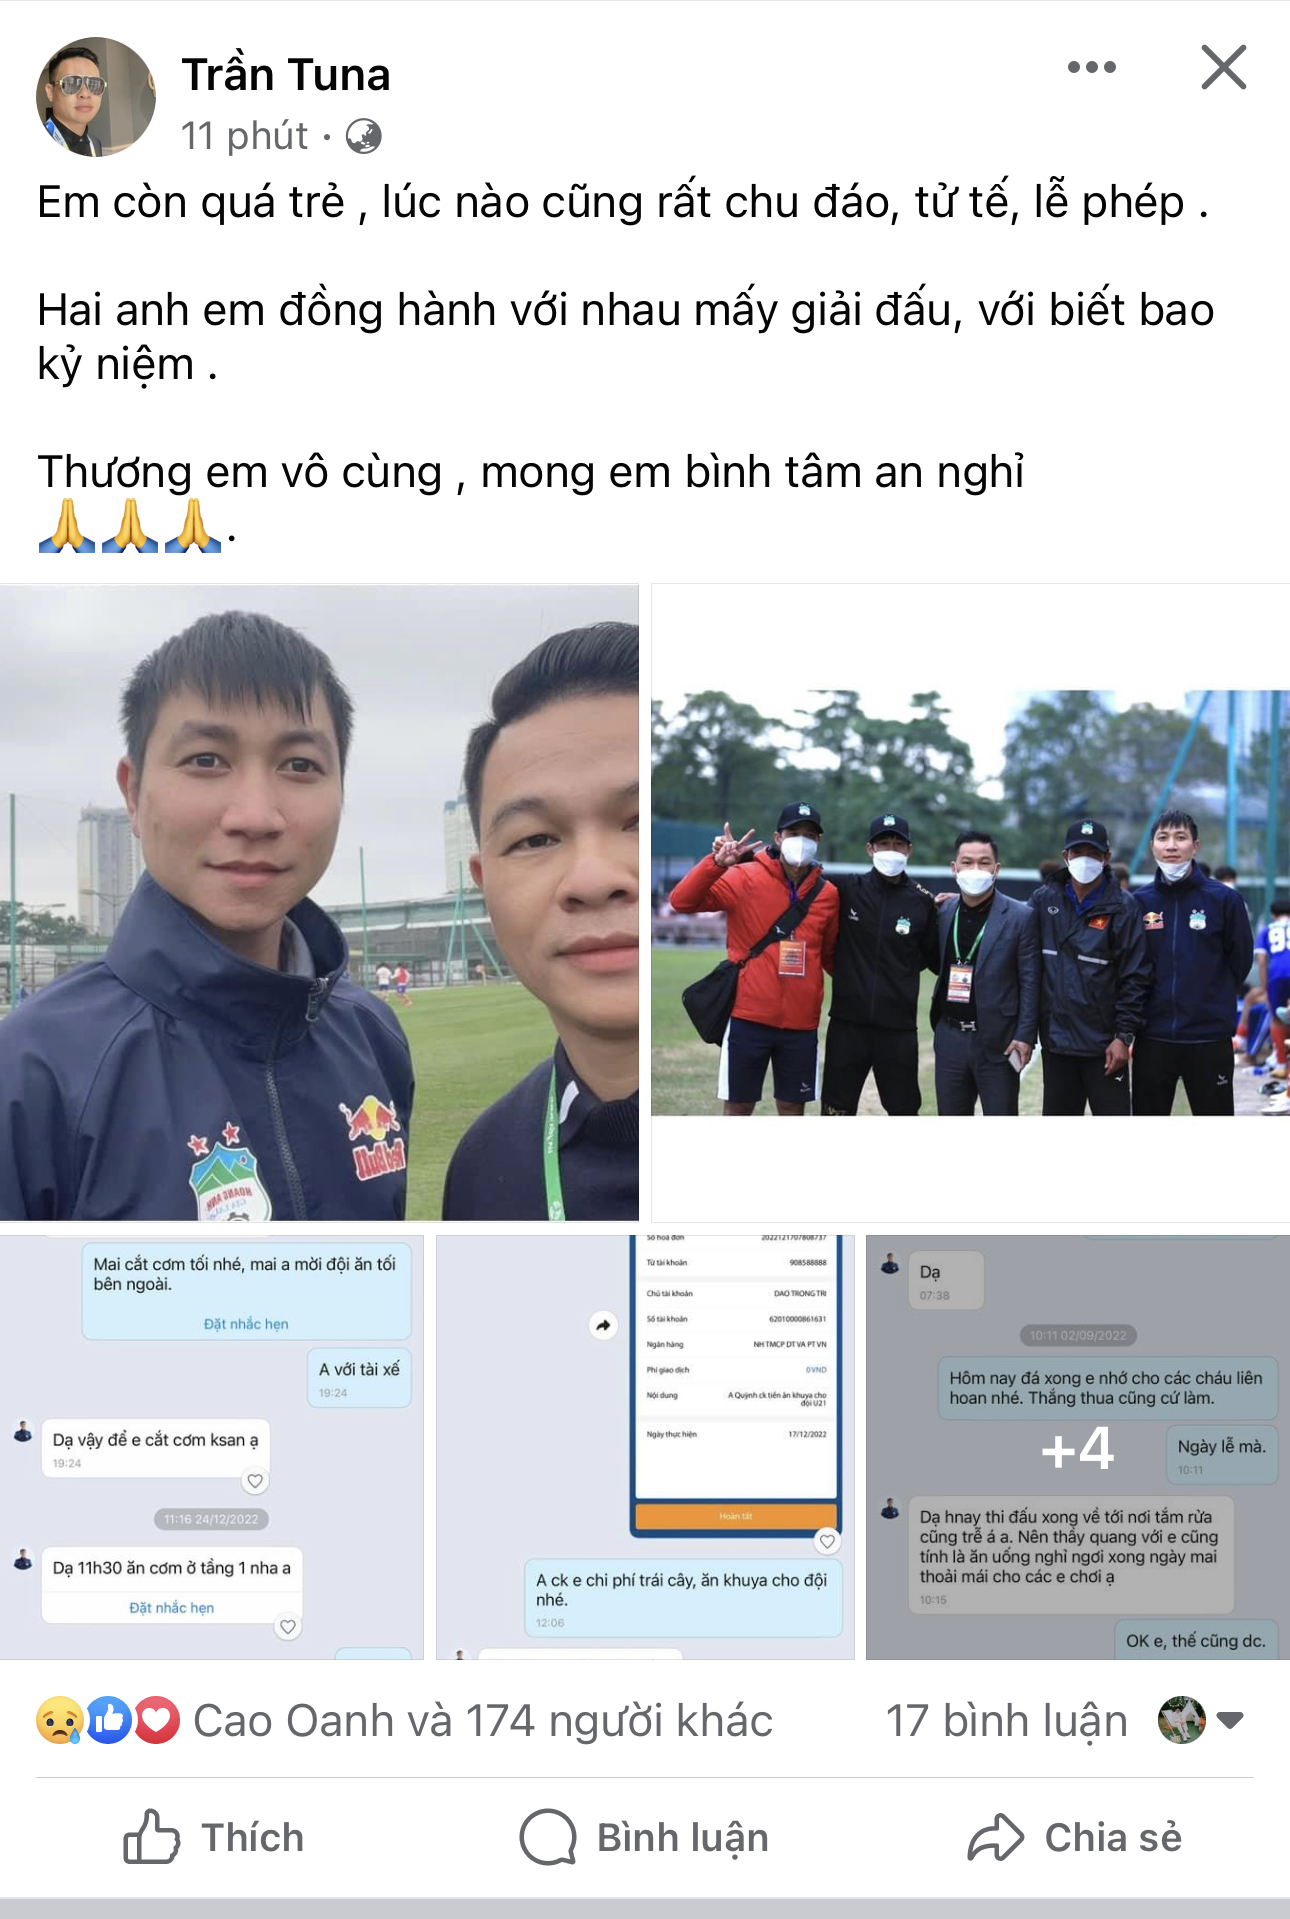 Uỷ viên ban chấp hành LĐBĐ Việt Nam - Trần Văn Quỳnh thương xót trước thông tin thành viên HAGL gặp tai nạn thảm khốc 